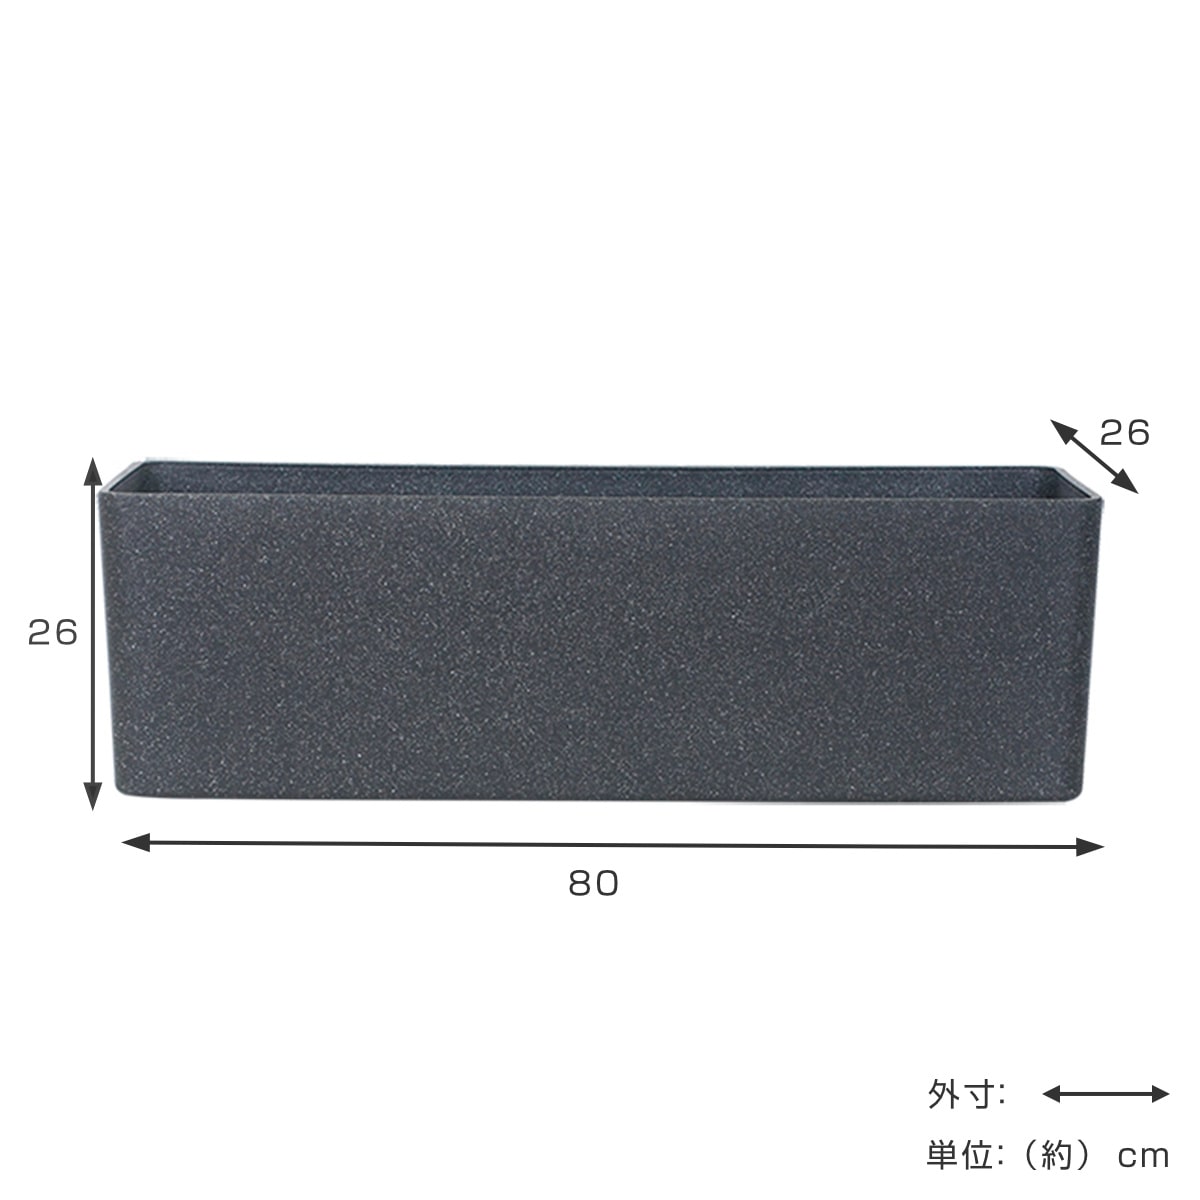 プランター FR長方形チャコールブラック 幅80×奥行き26×高さ26cm 